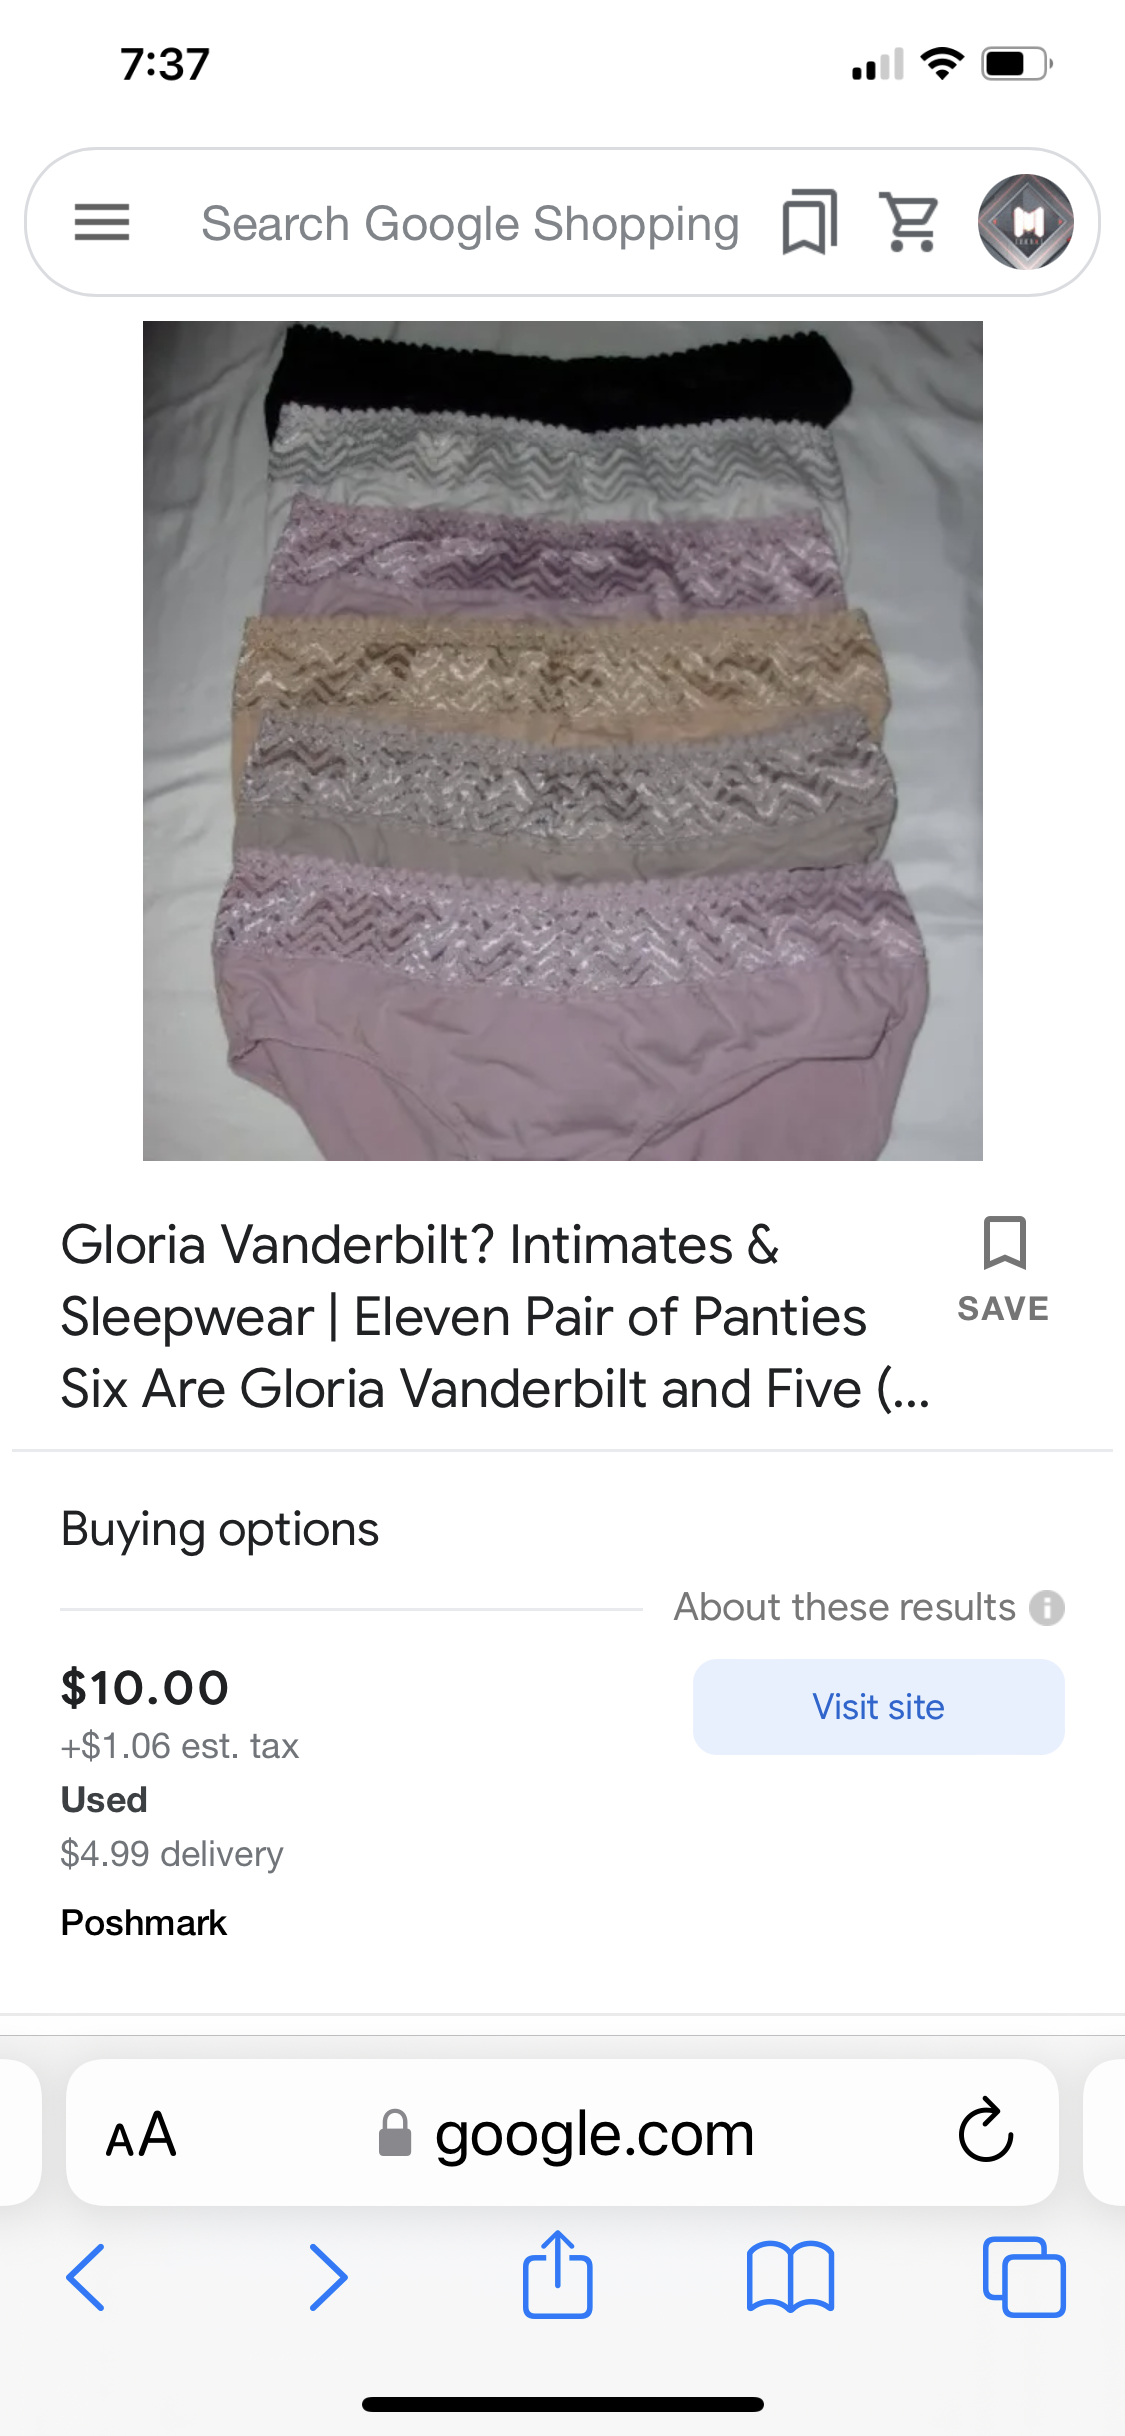 Gloria Vanderbilt Reviews - 3 Reviews of Gloria-vanderbilt.com